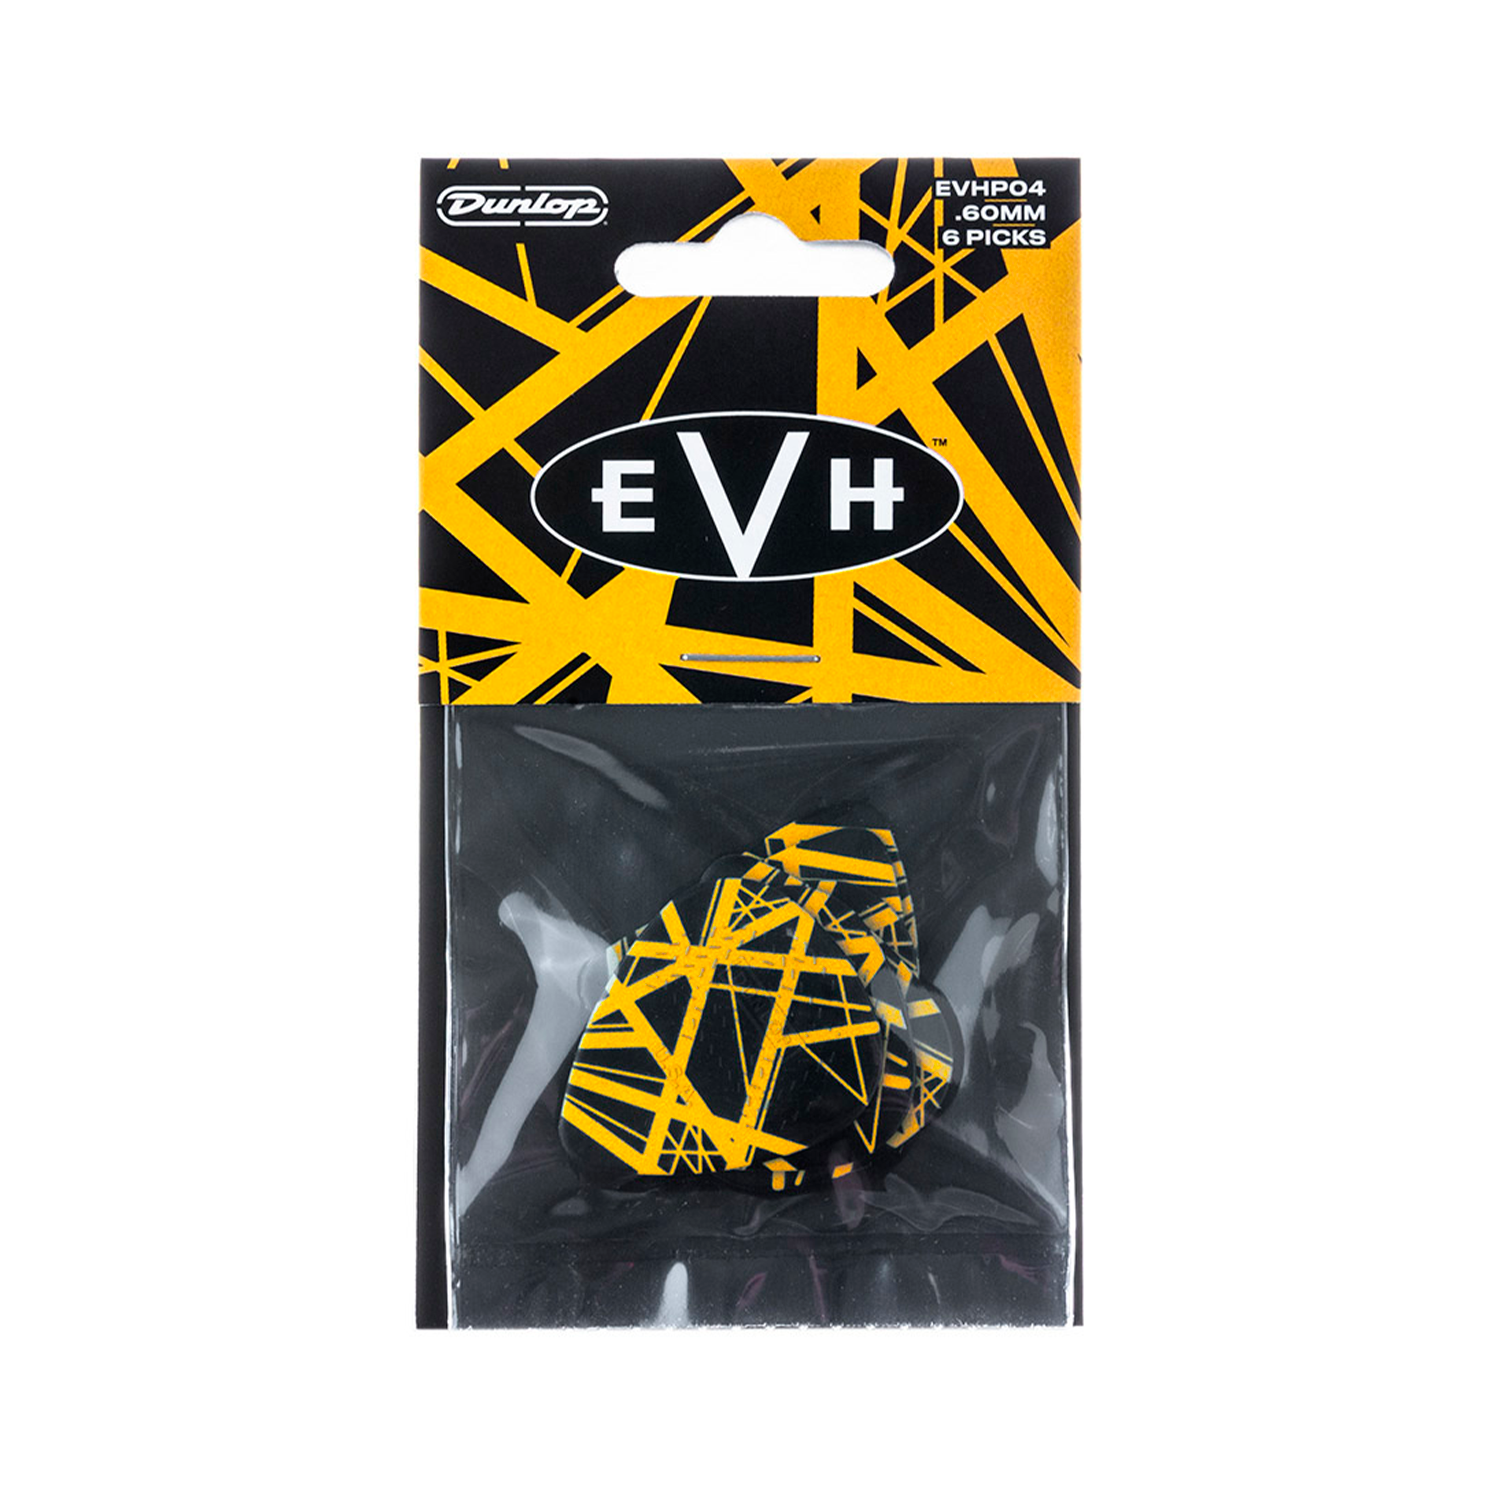 Pack de 6 uñas Dunlop - Eddie Van Halen EVHP04